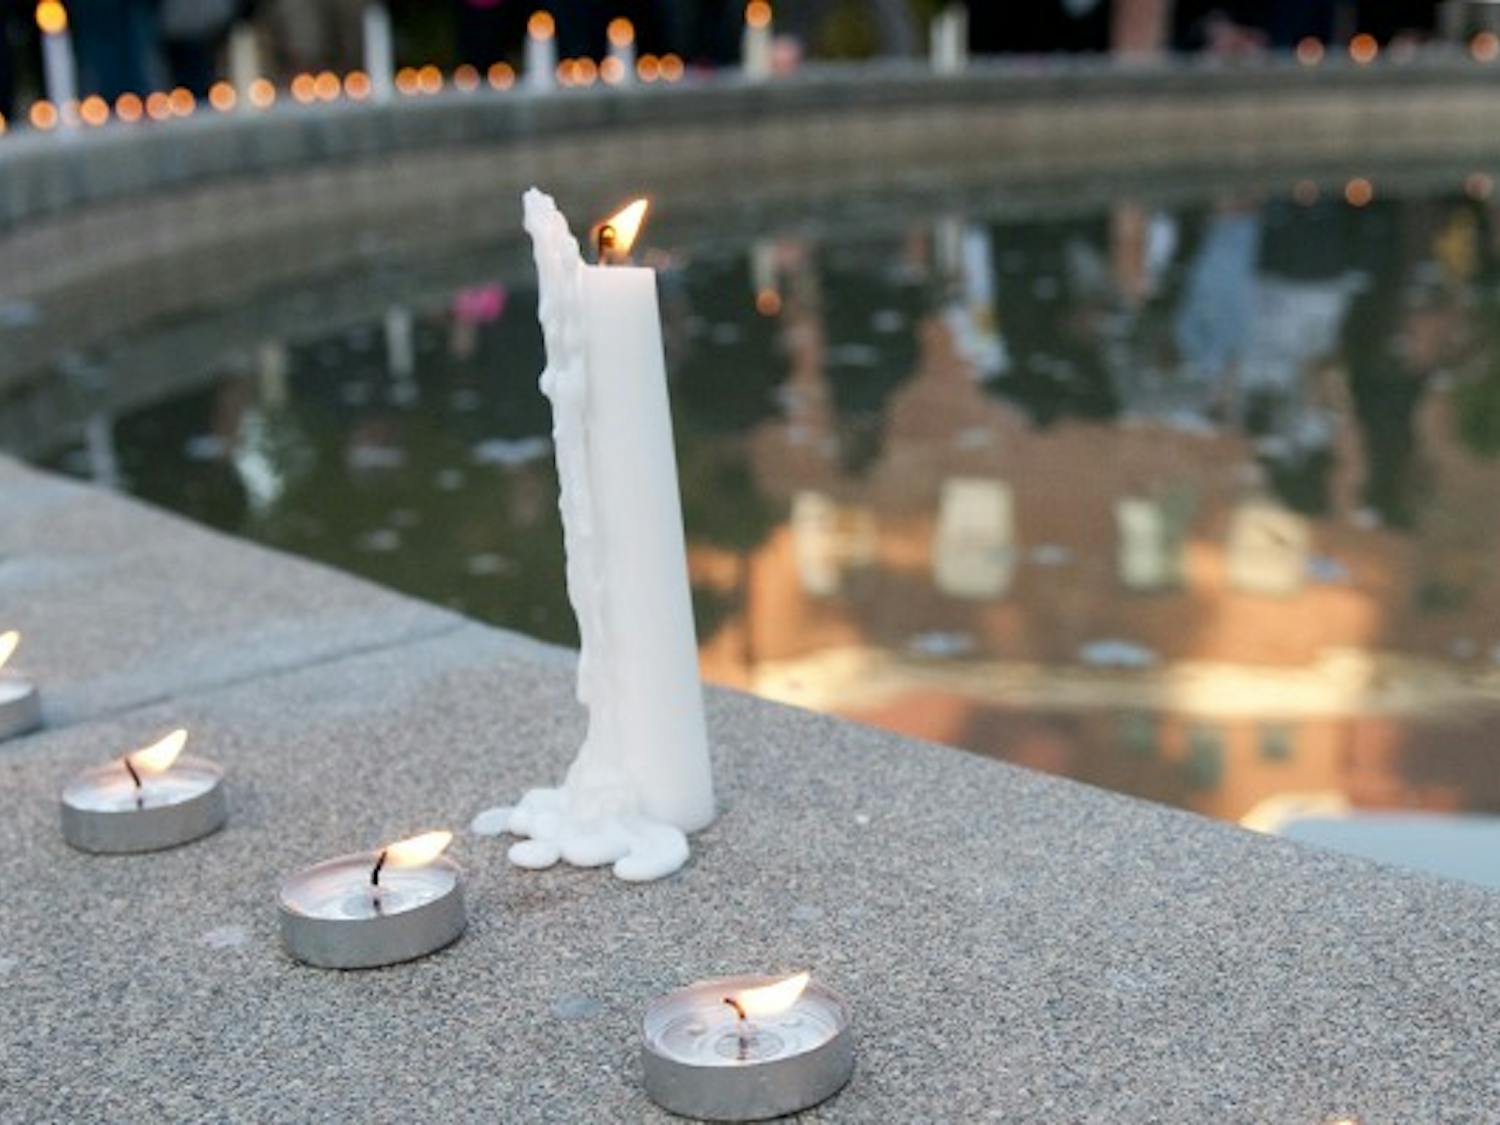 Slideshow: Boston candlelight vigil